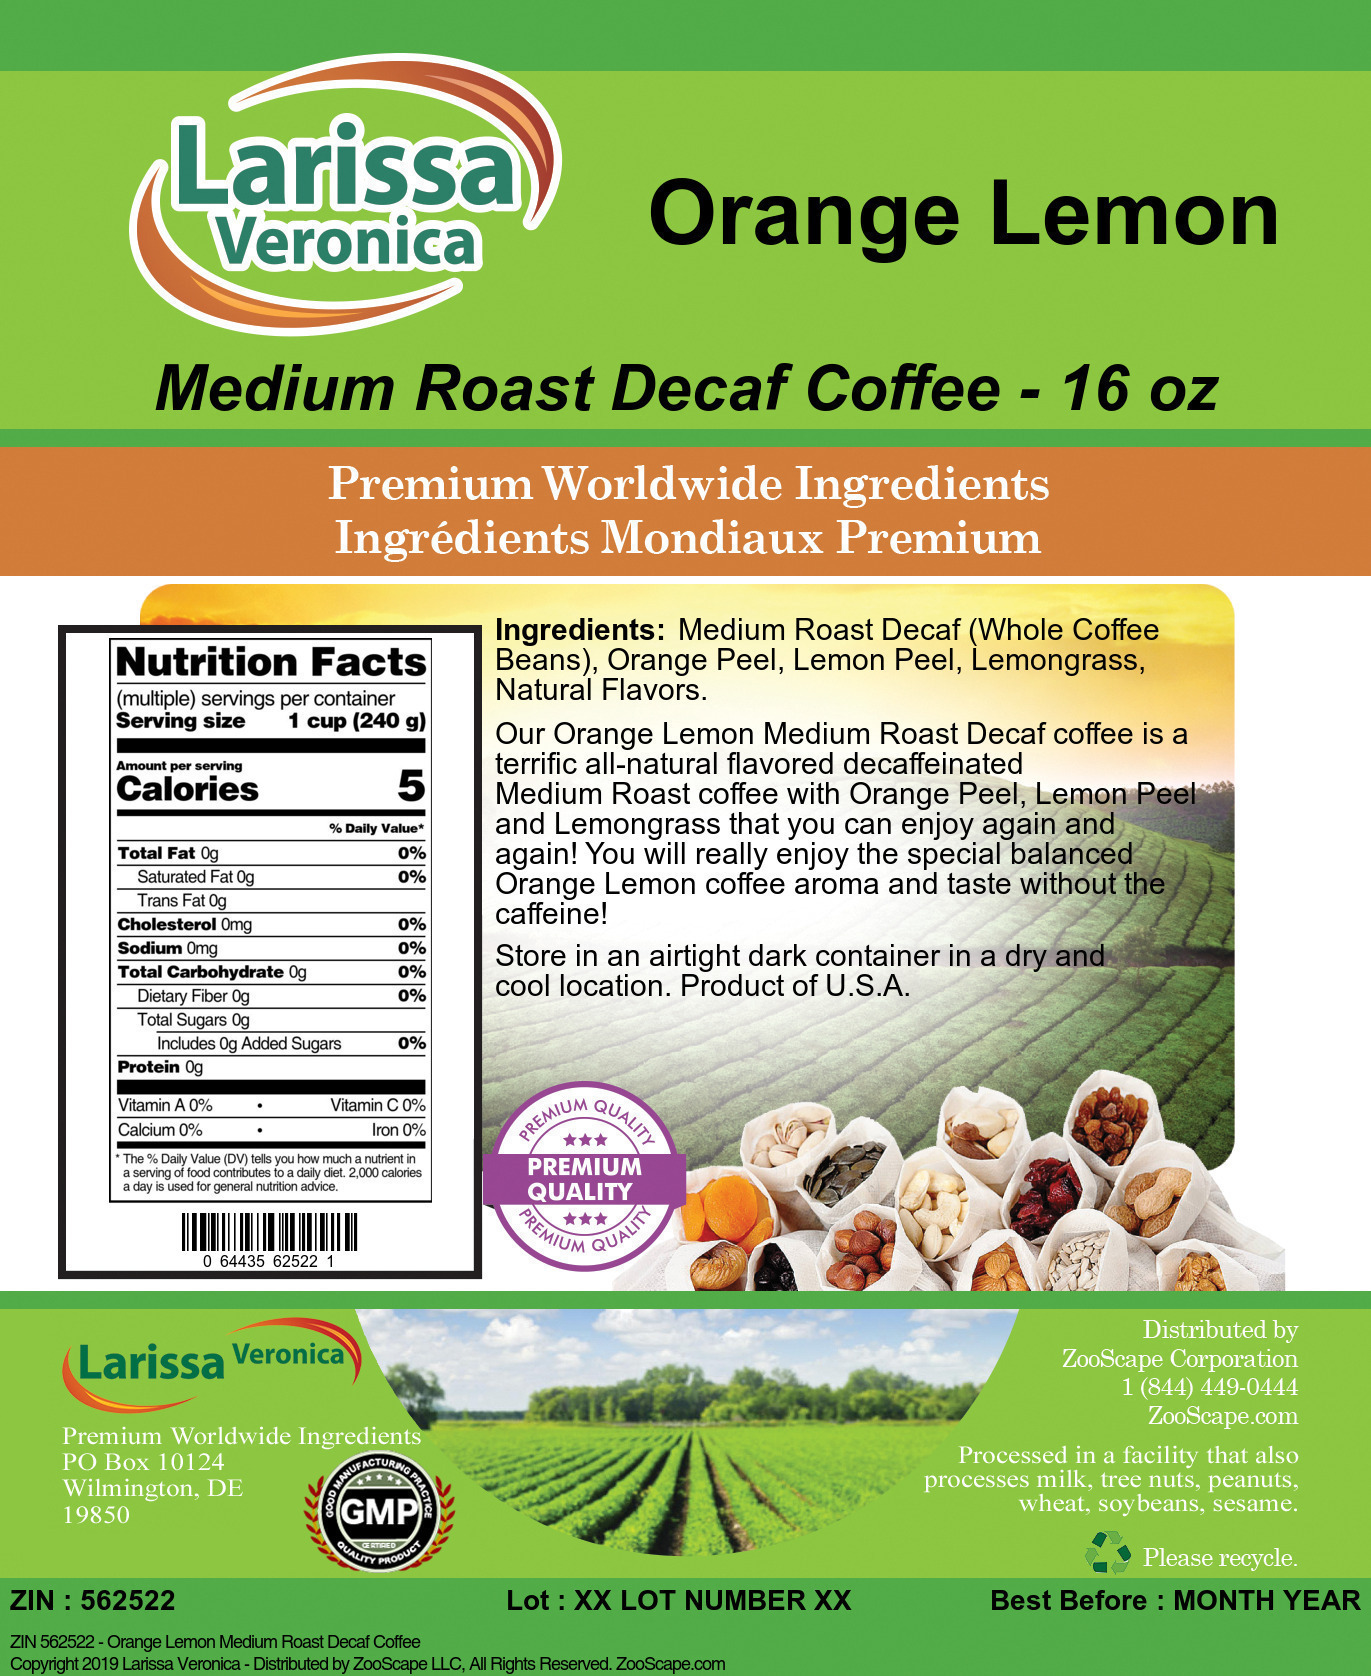 Orange Lemon Medium Roast Decaf Coffee - Label